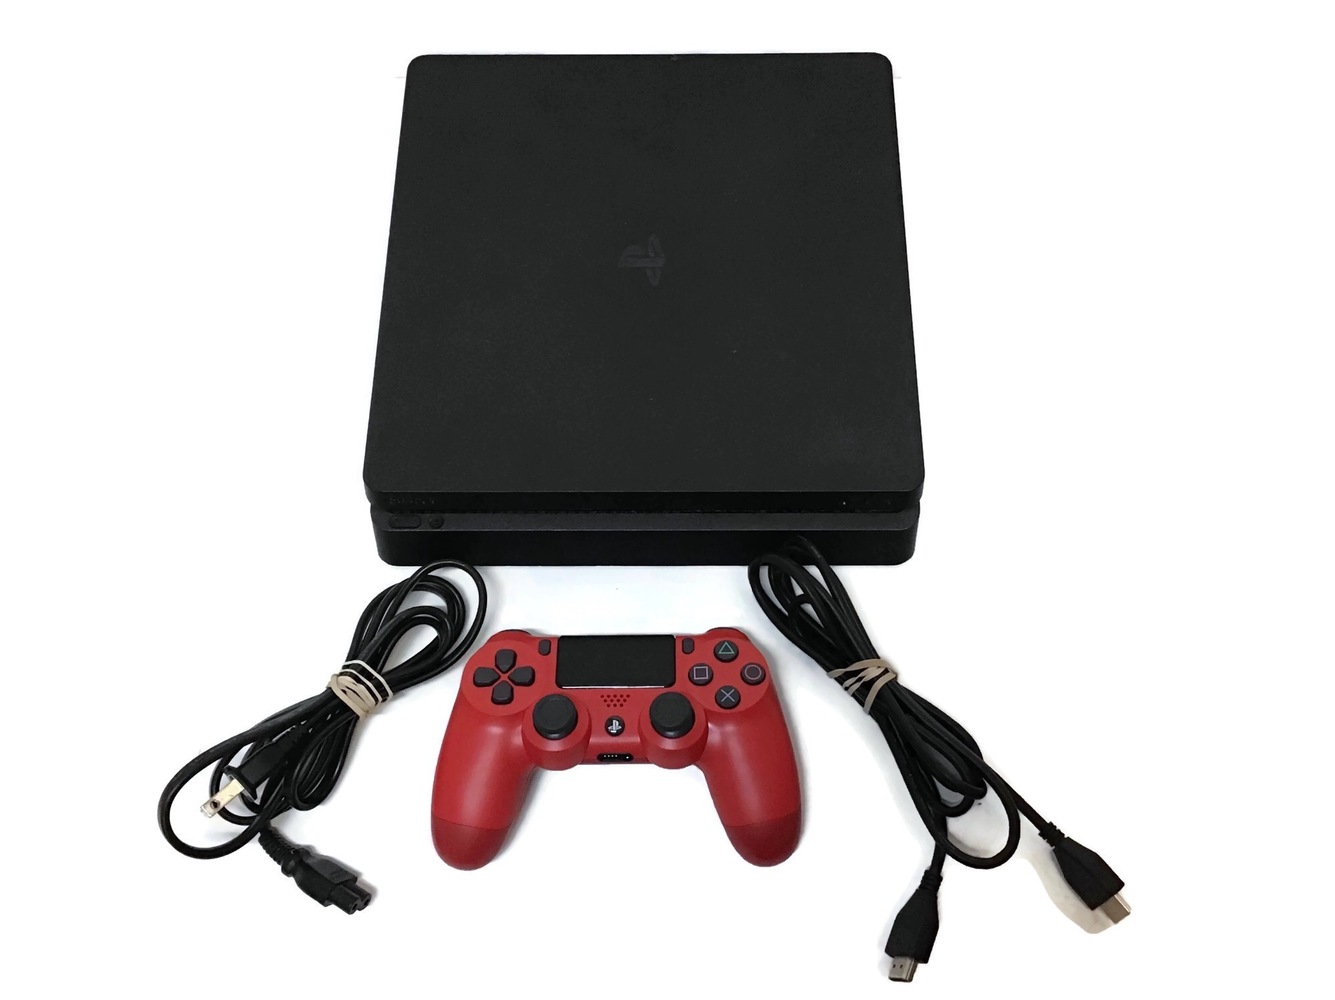  Sony PS4 CUH -2215B 1TB PlayStation 4 Slim Black Gaming Console w 